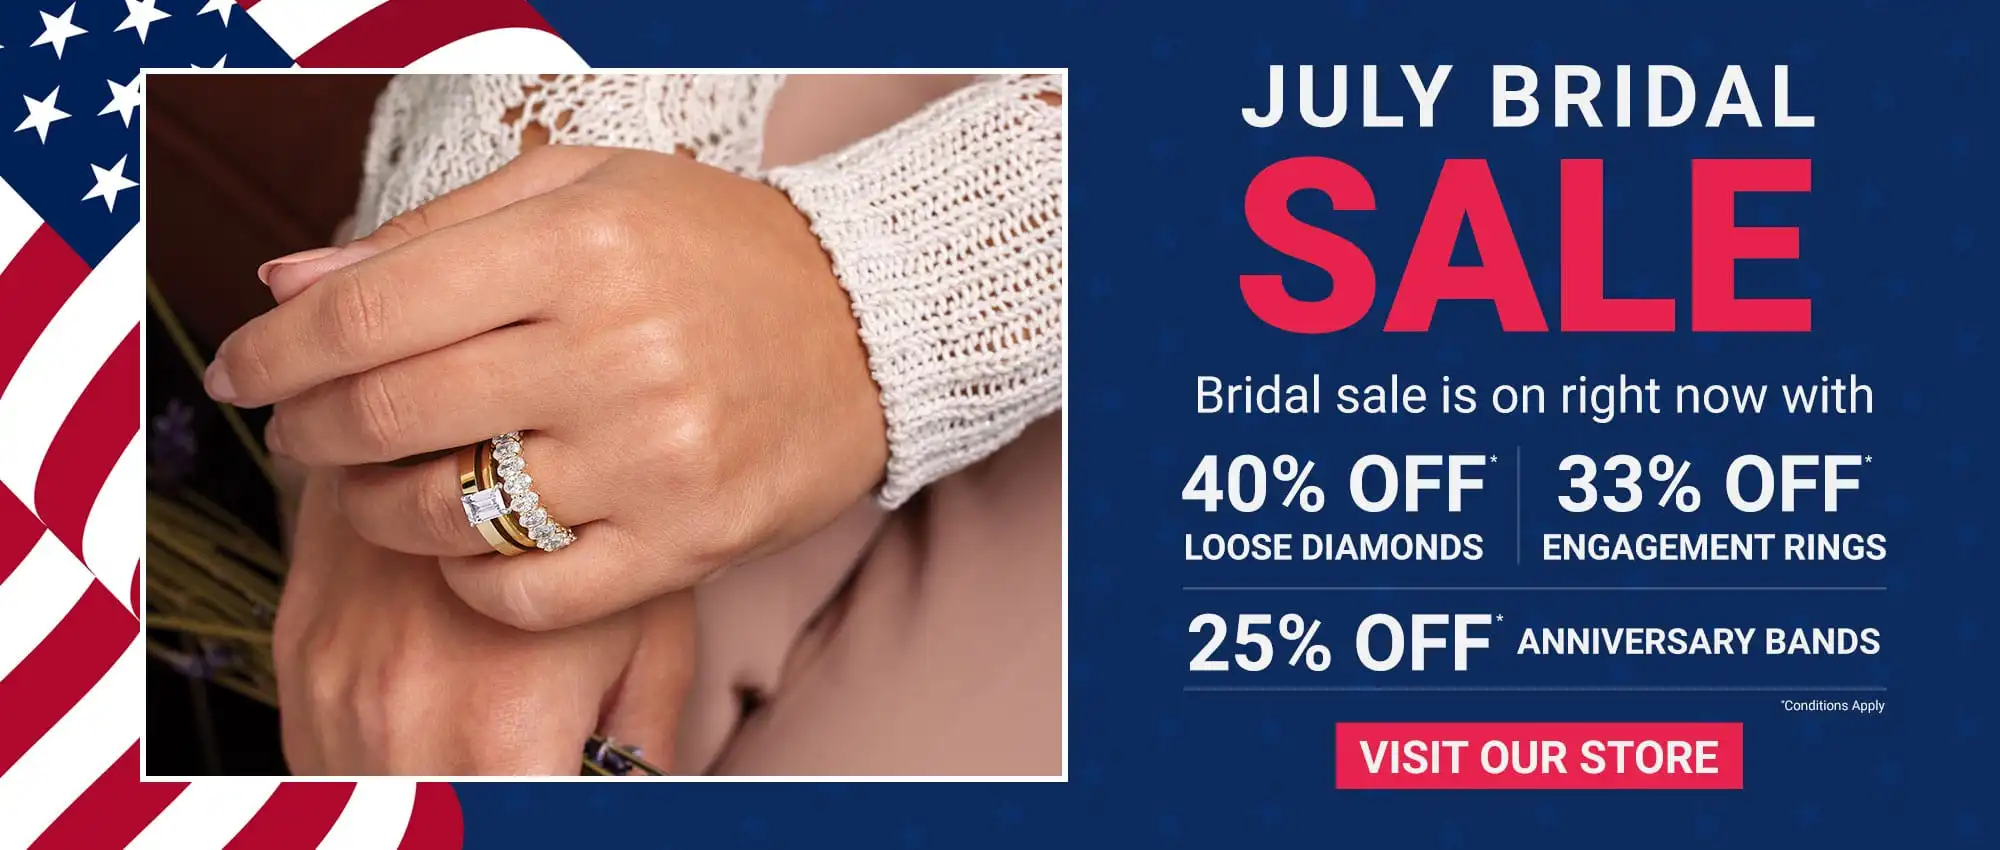 July Bridal Sale at Borthwick Jewelry